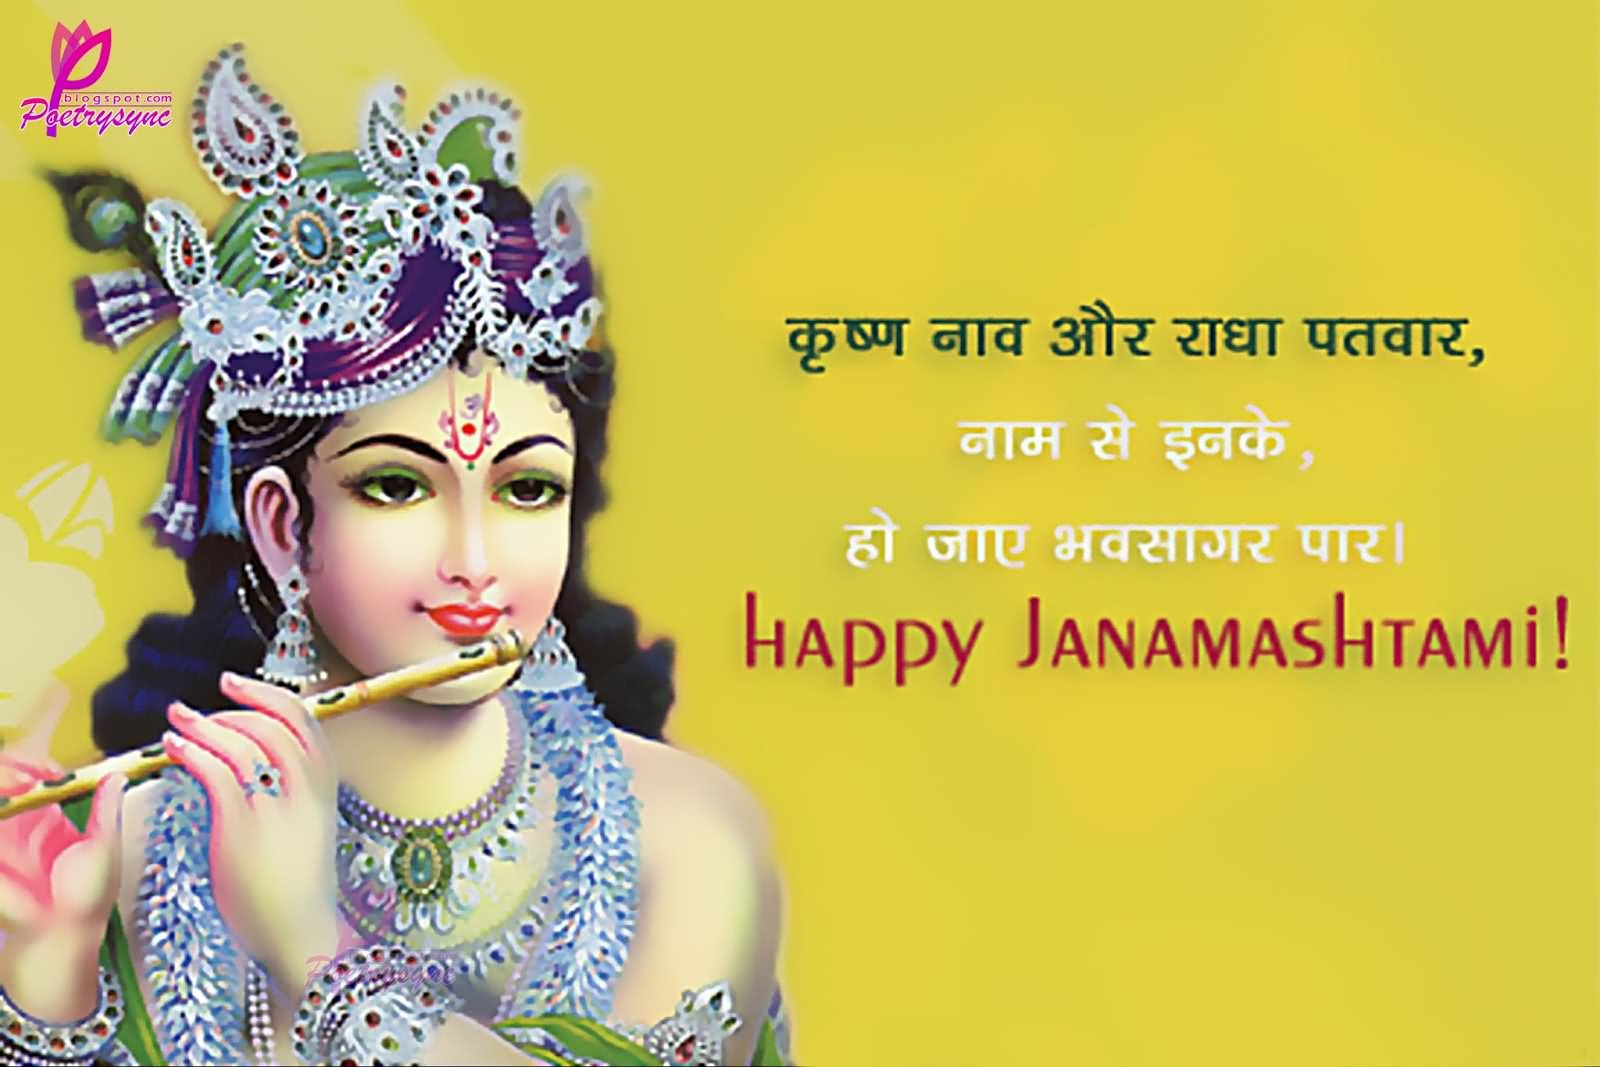 Happy Janmashtami Wishes Image